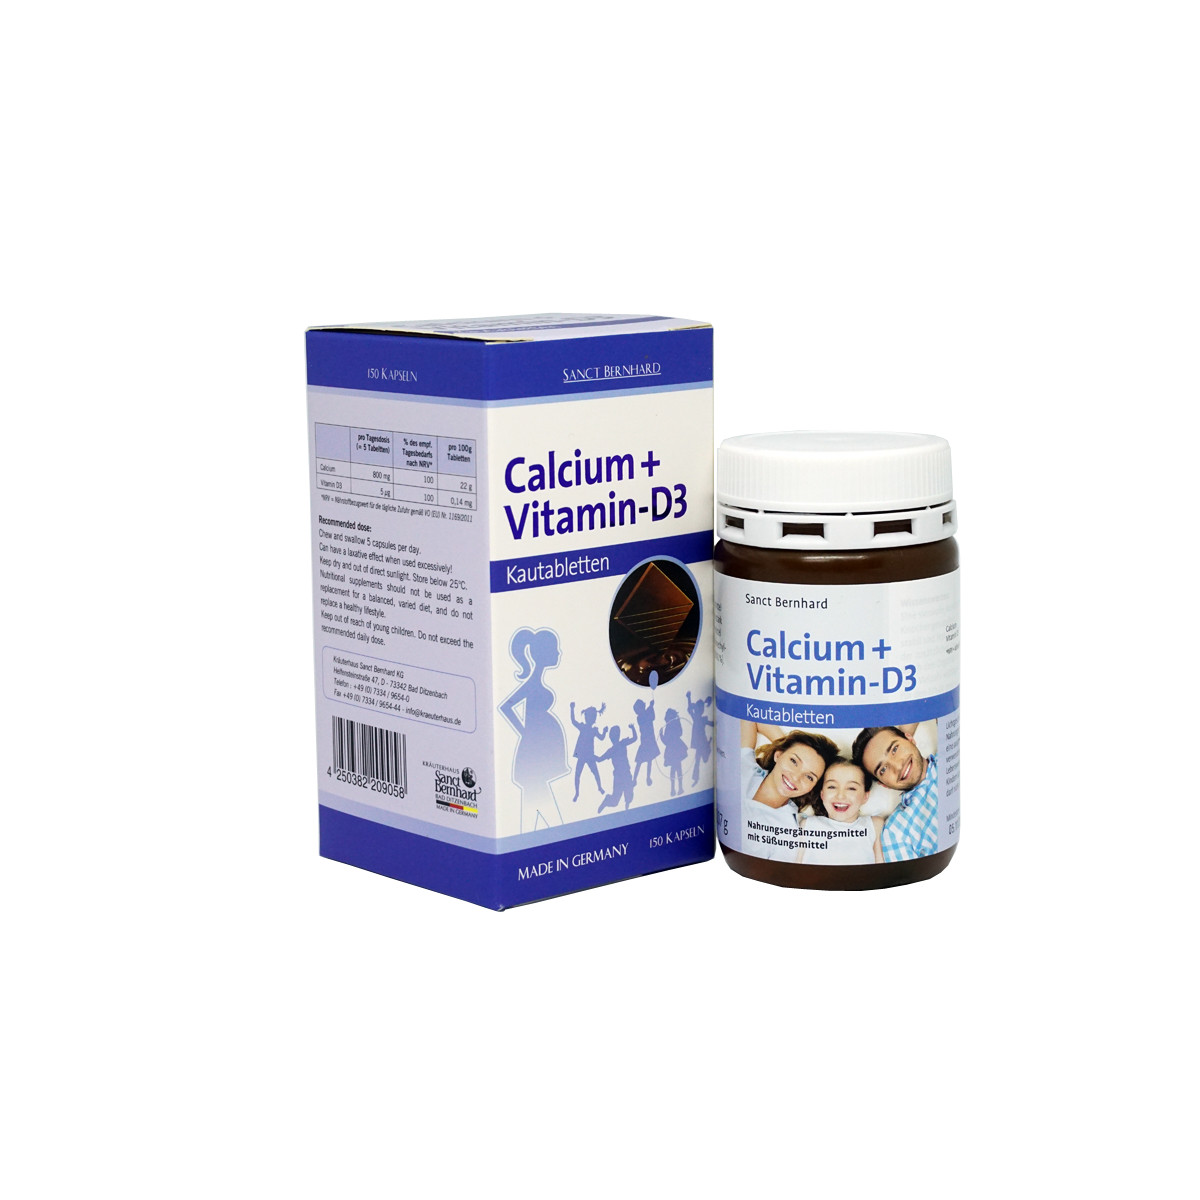 Calcium + Vitamin D3 – Bổ sung canxi, hỗ trợ hệ xương răng chắc khỏe cho trẻ nhỏ, người già mắc các chứng loãng xương, giòn xương, phụ nữ mang thai và cho con bú